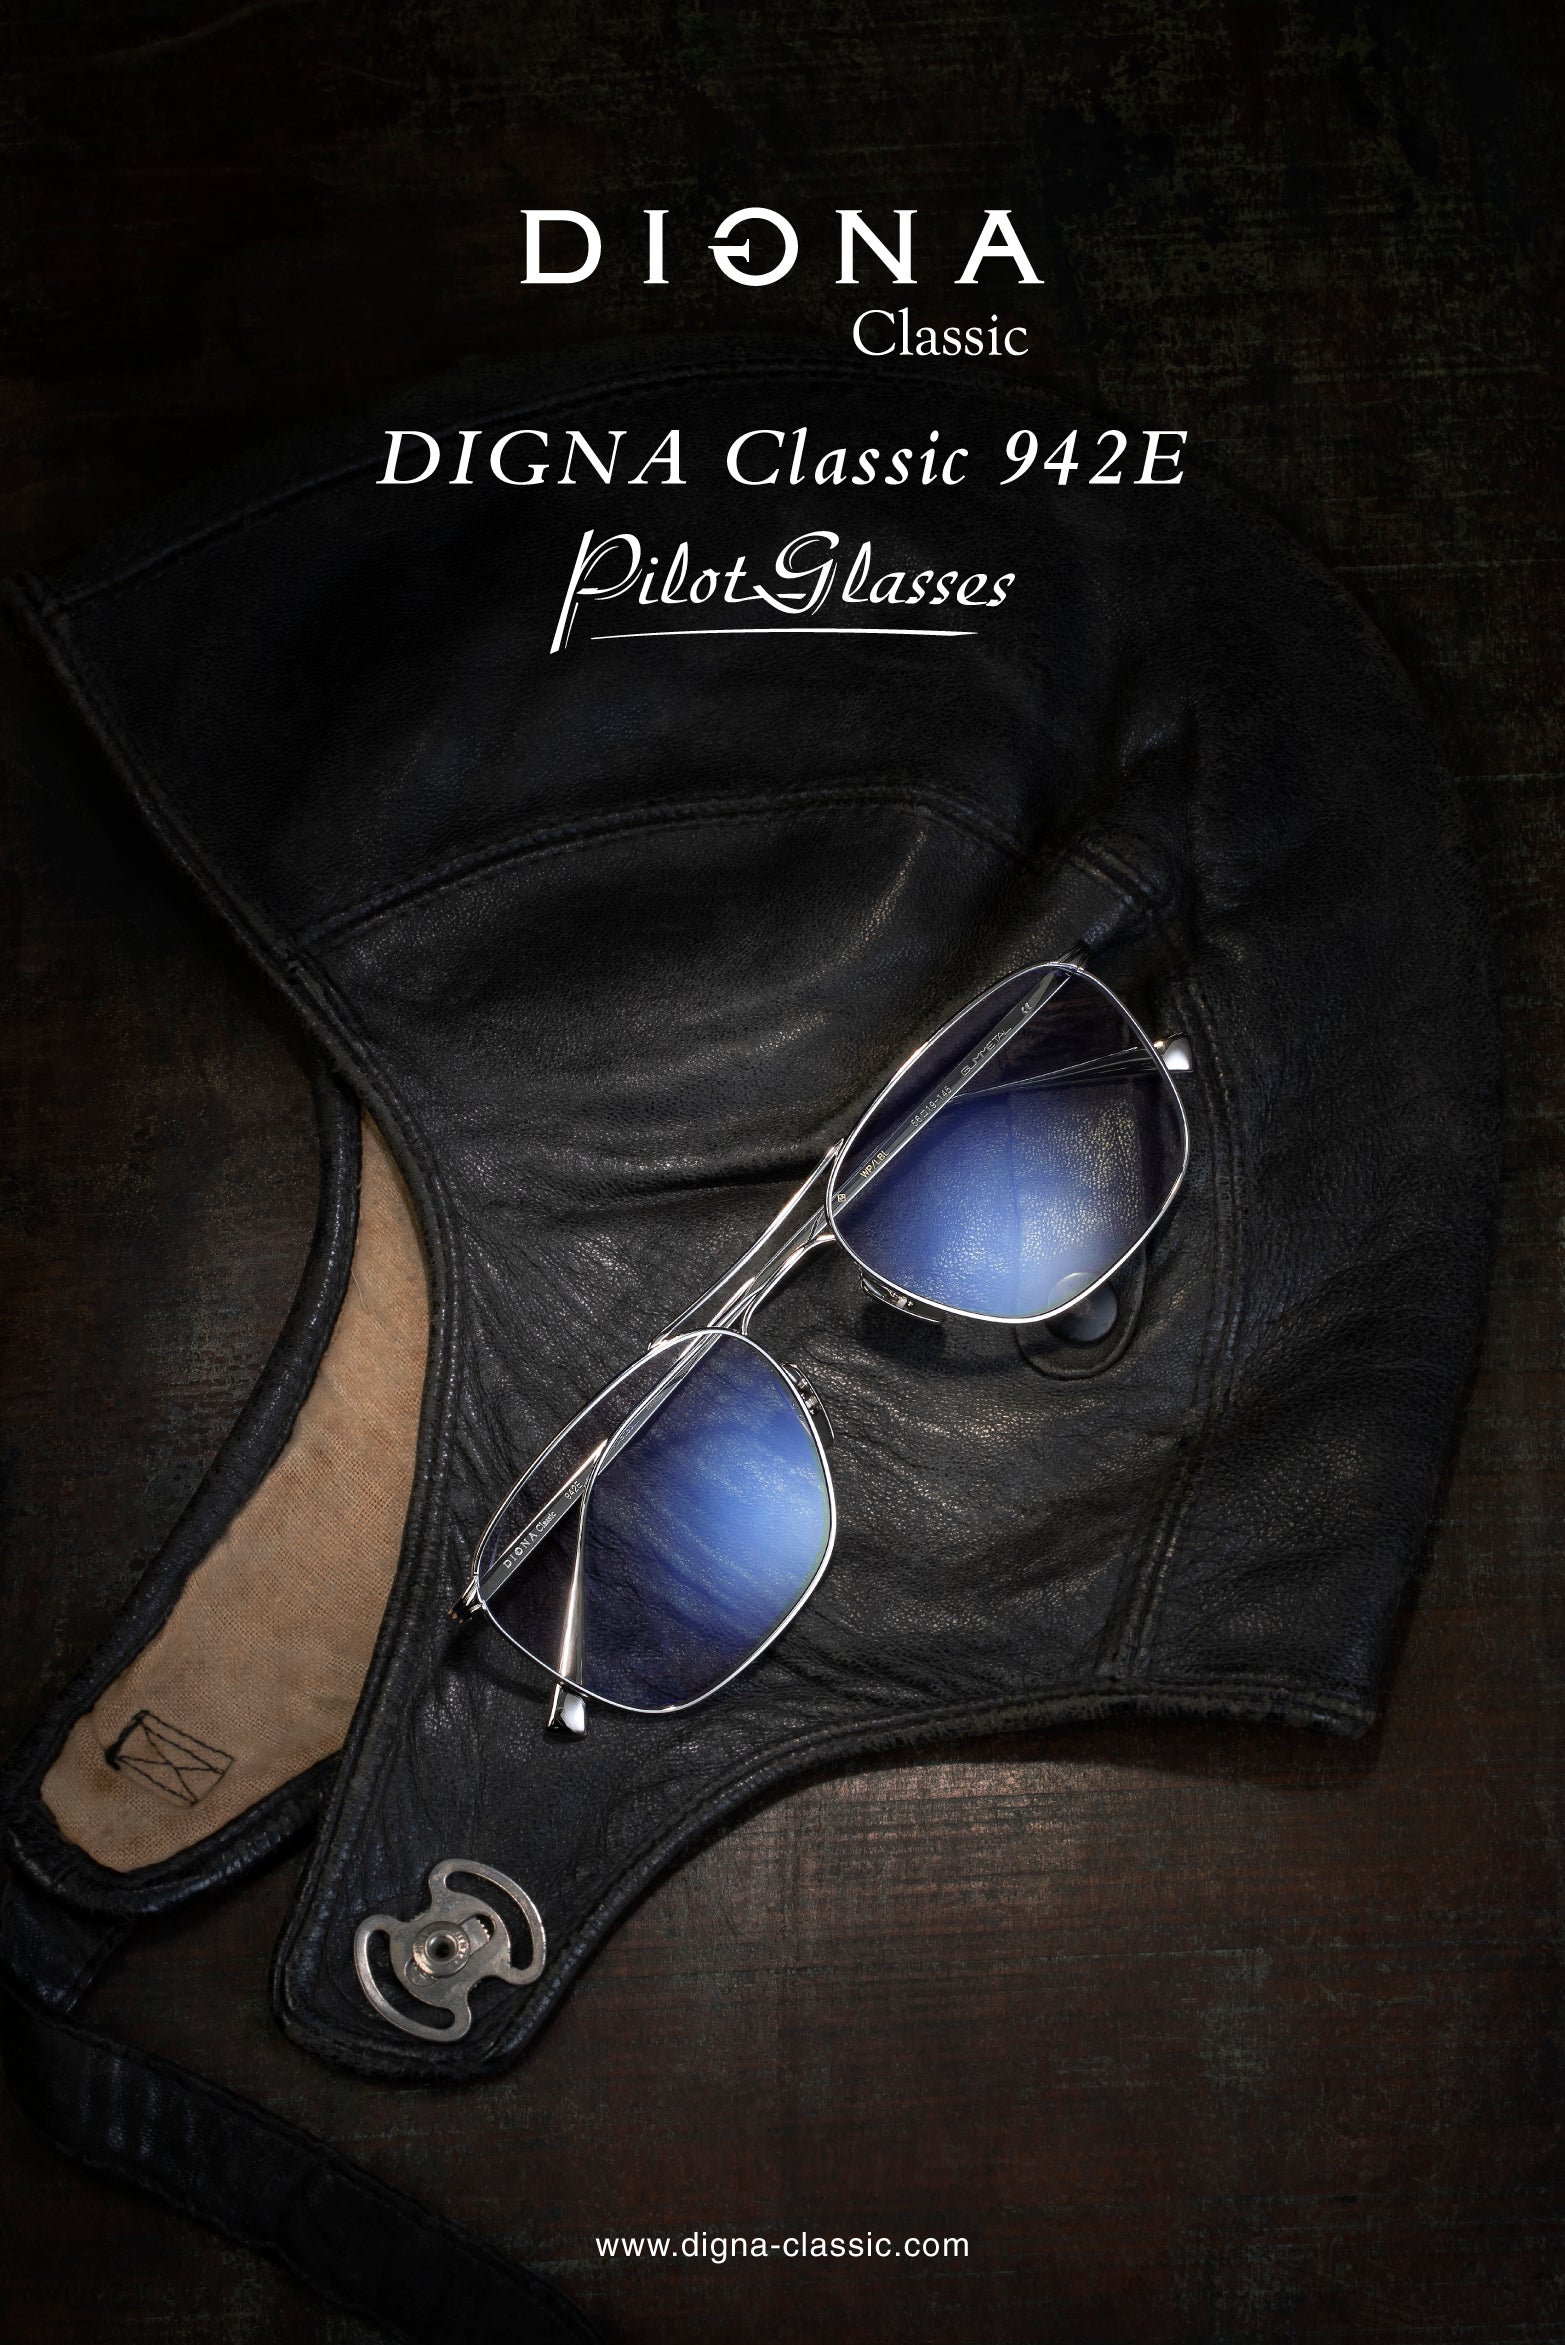 DIGNA Classic 942E